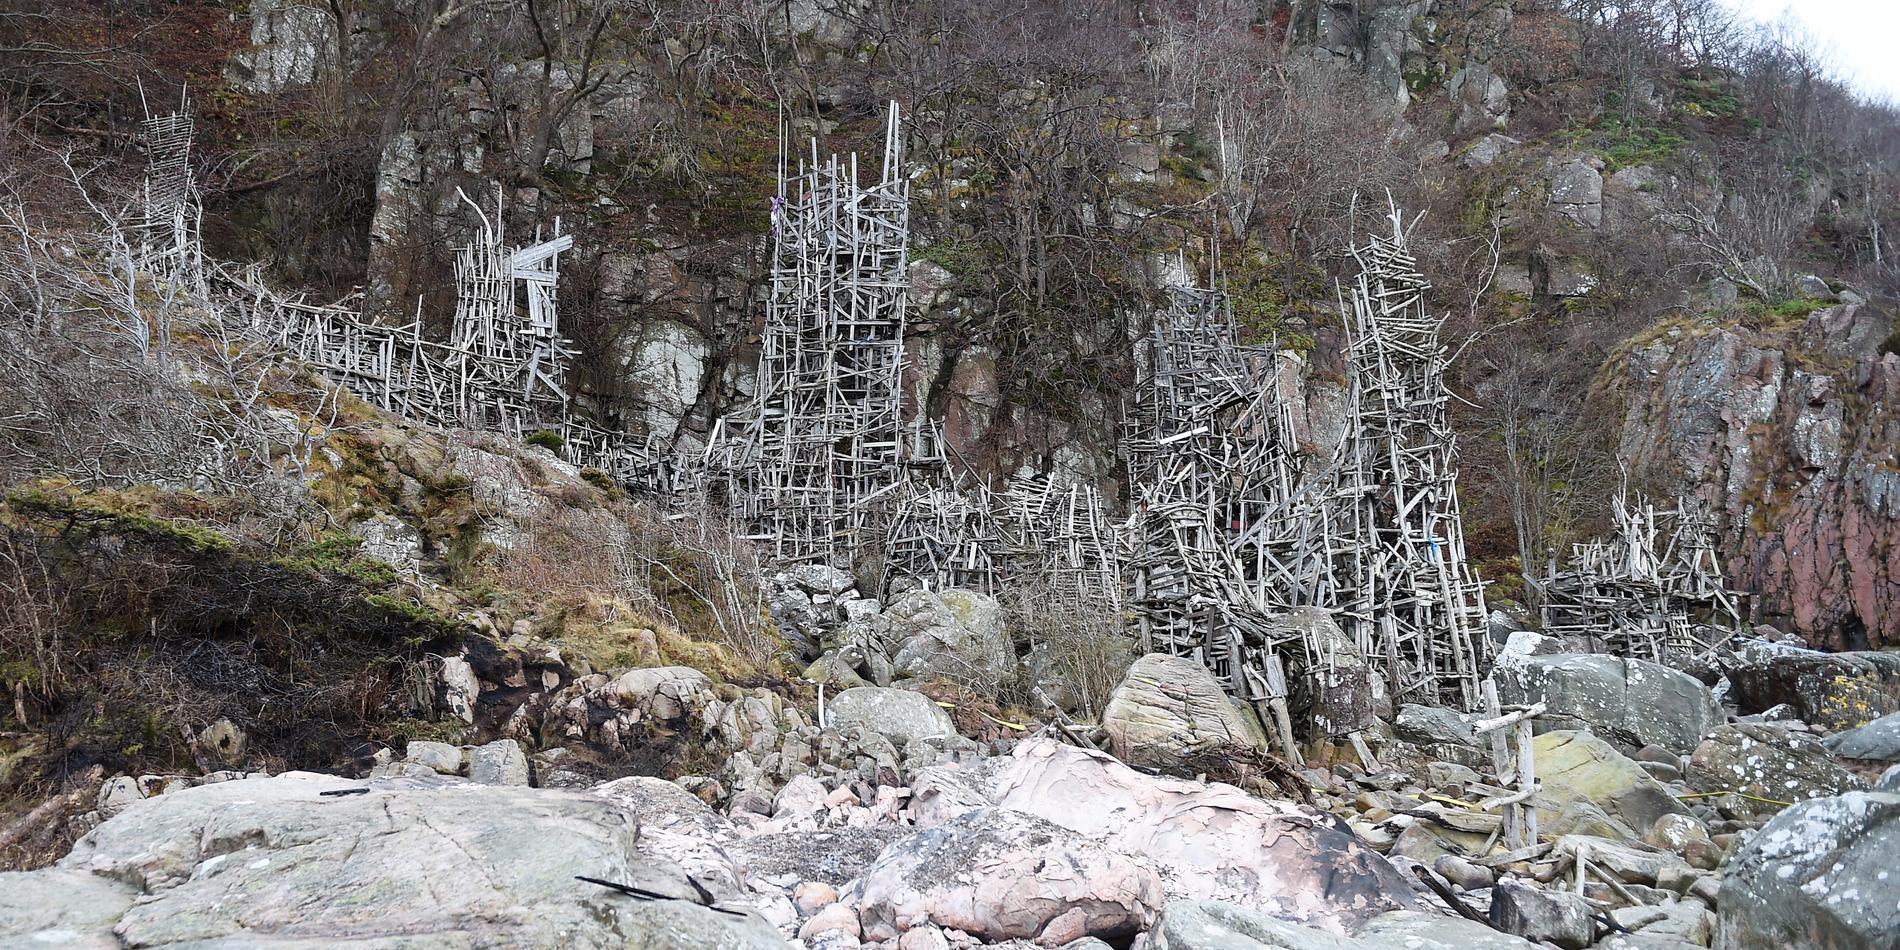 Nimis klättrar längs Kullaberg och har byggts på naturreservatets område. Verket utsattes för ett brandattentat i november 2016. Vilks dömdes till böter i tingsrätten i februari 2018 efter att ha återuppbyggt det som skadats . Nu vill länsstyrelsen förbjuda besök helt av säkerhetsskäl.